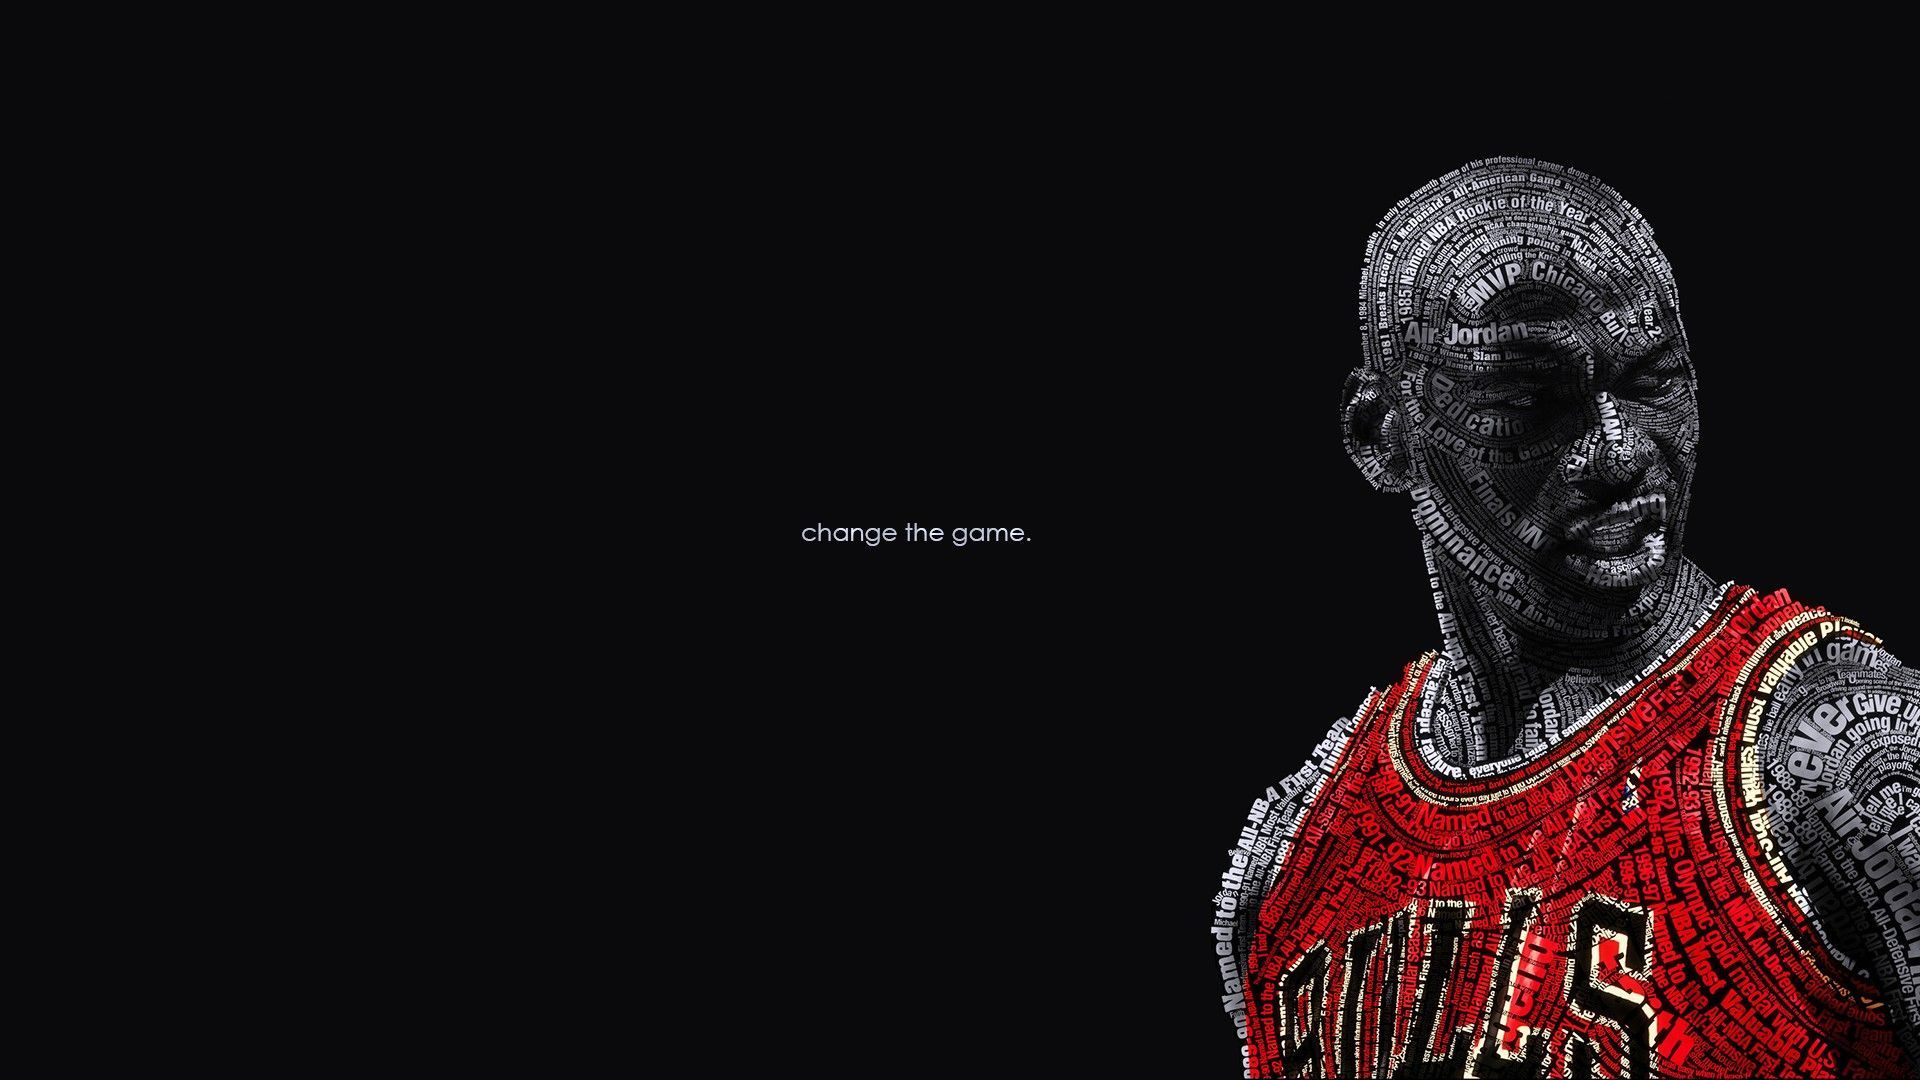 Michael Jordan Wallpapers HD Download Free | Wallpapers ...